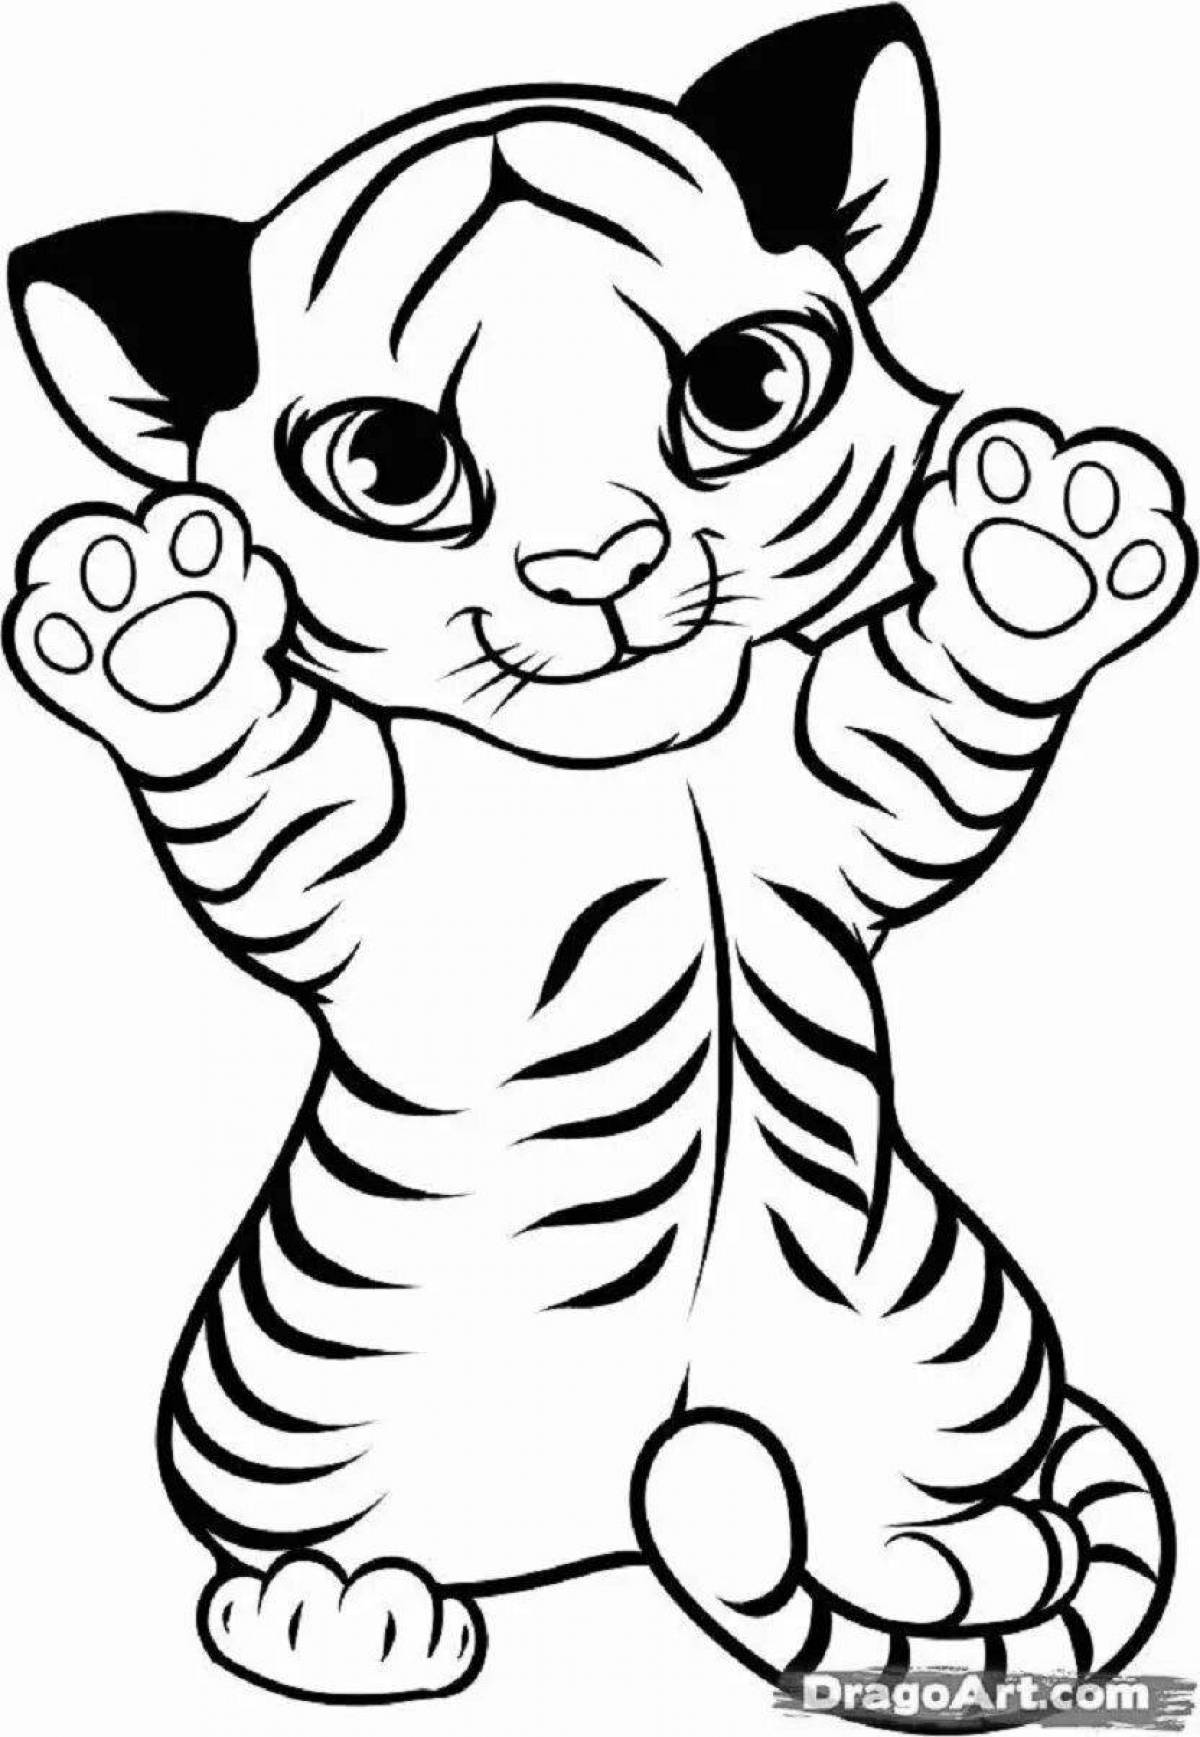 Artistic drawing of a tiger cub